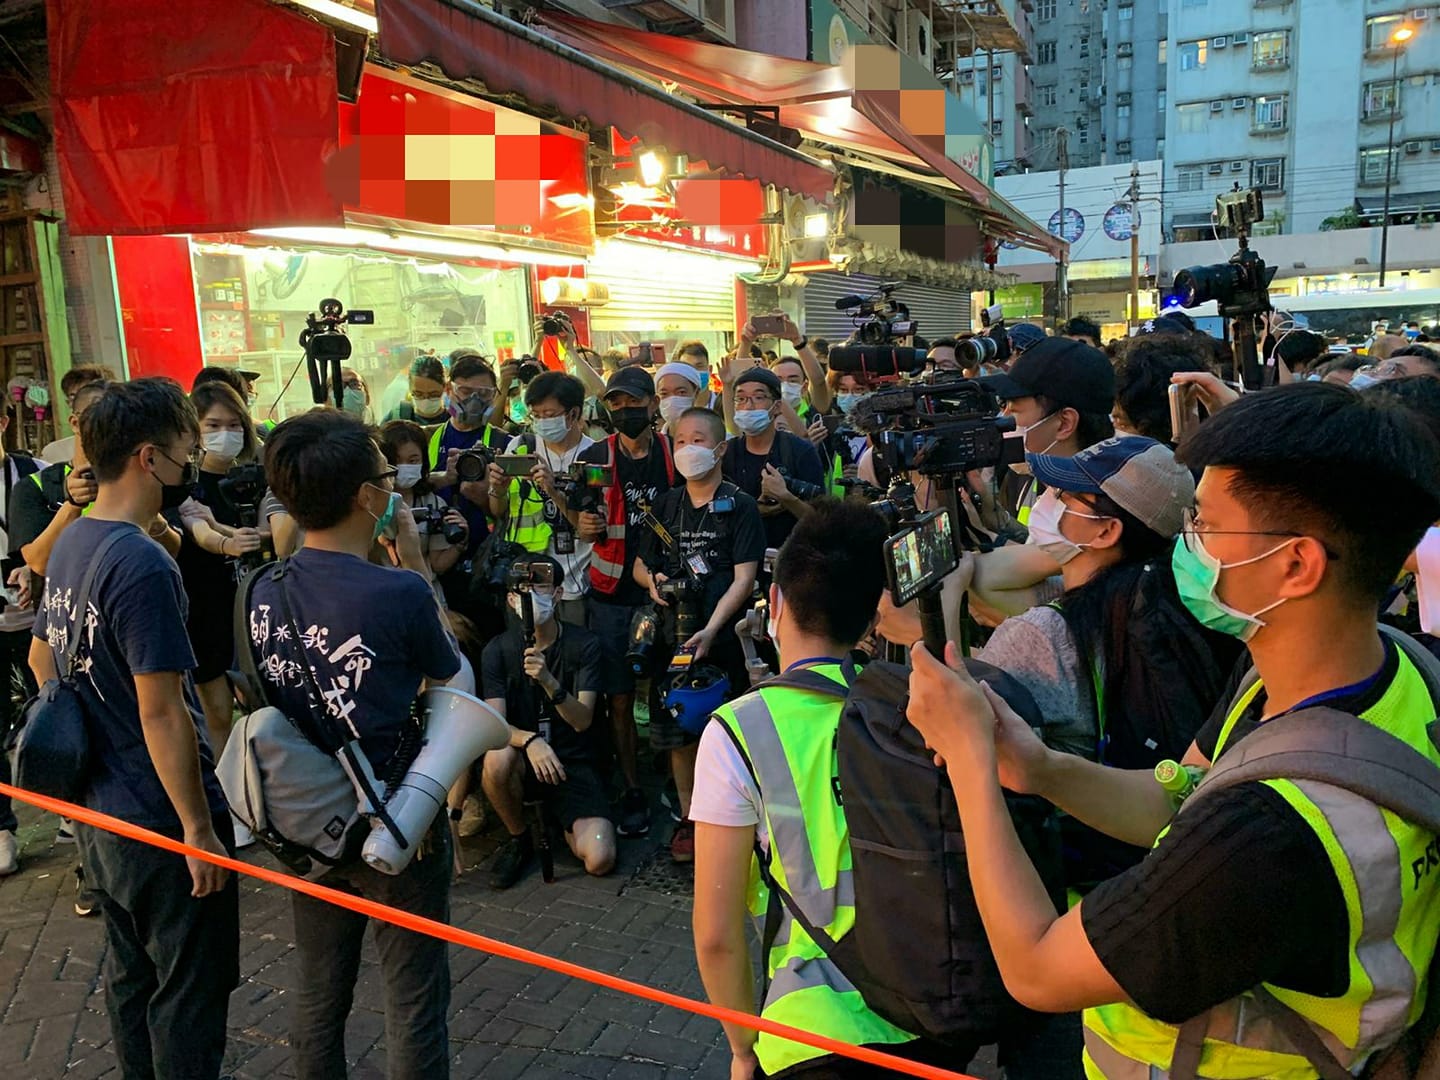 涉嫌組織未經批准集結A4名泛暴派區議員被捕C]香港警察fb^